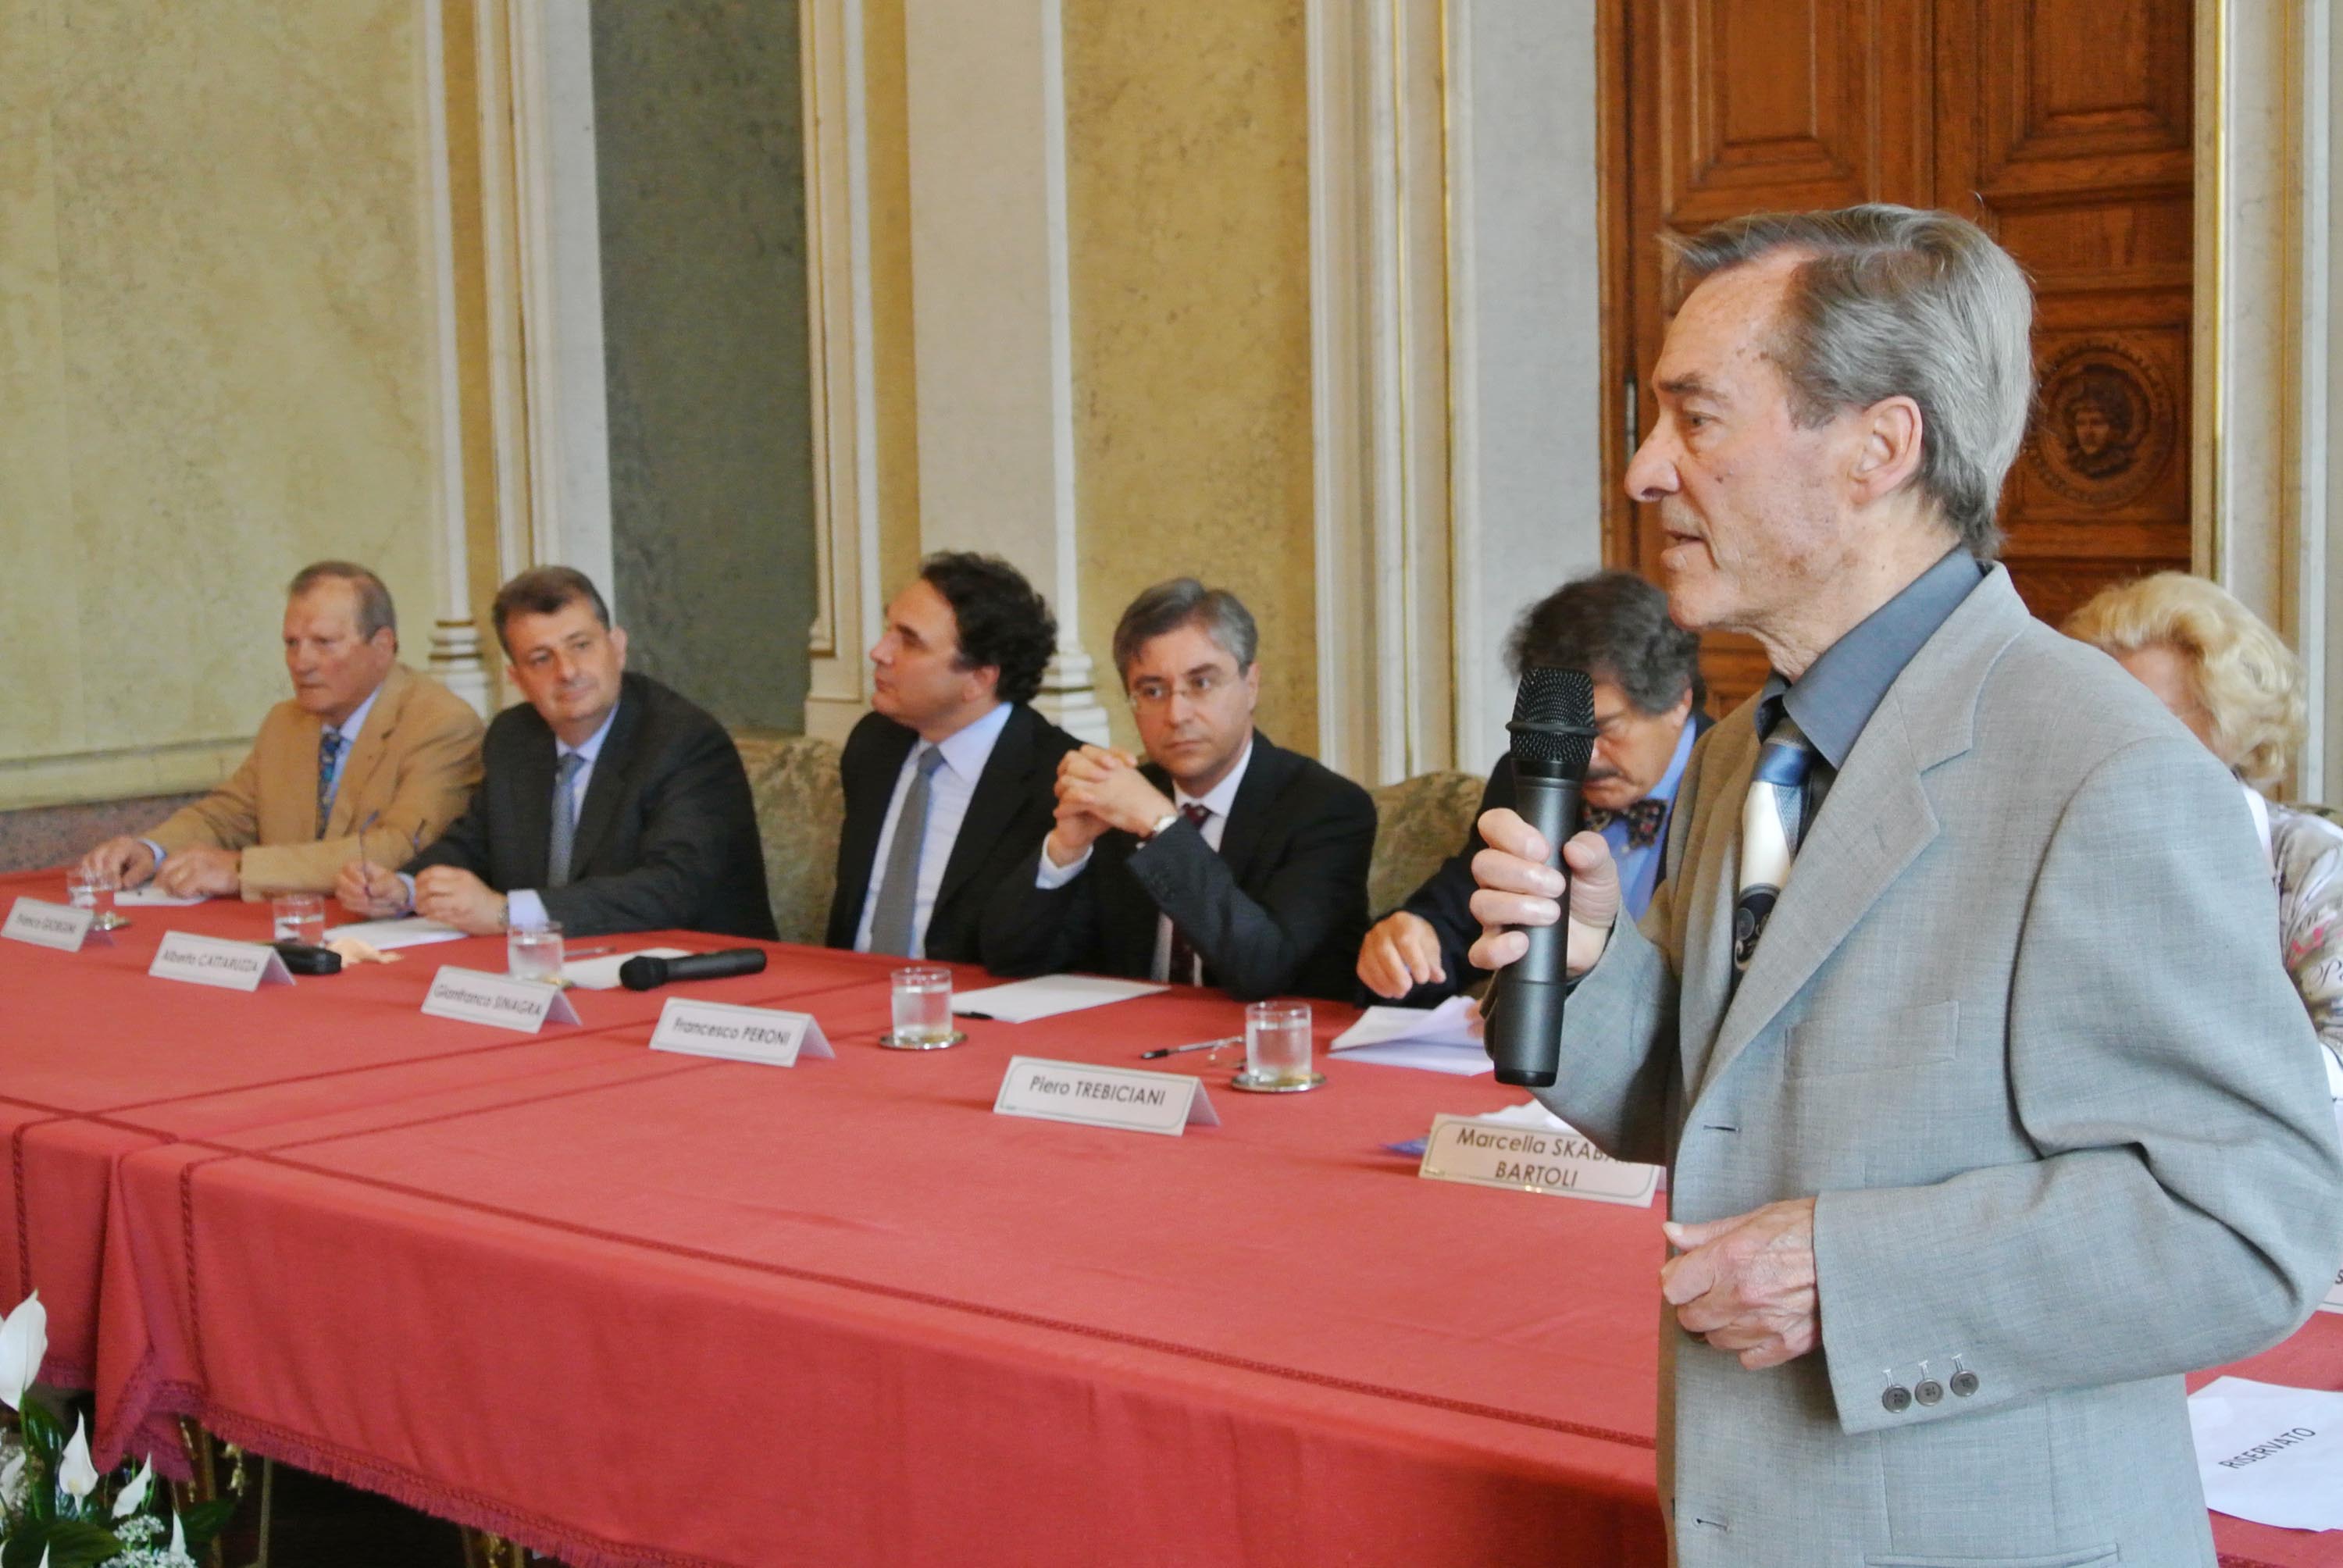 Augusto Re David (Membro Comitato Premio Barcola) interviene al Premio Barcola, nella sede della Regione. (Trieste 08/06/13)